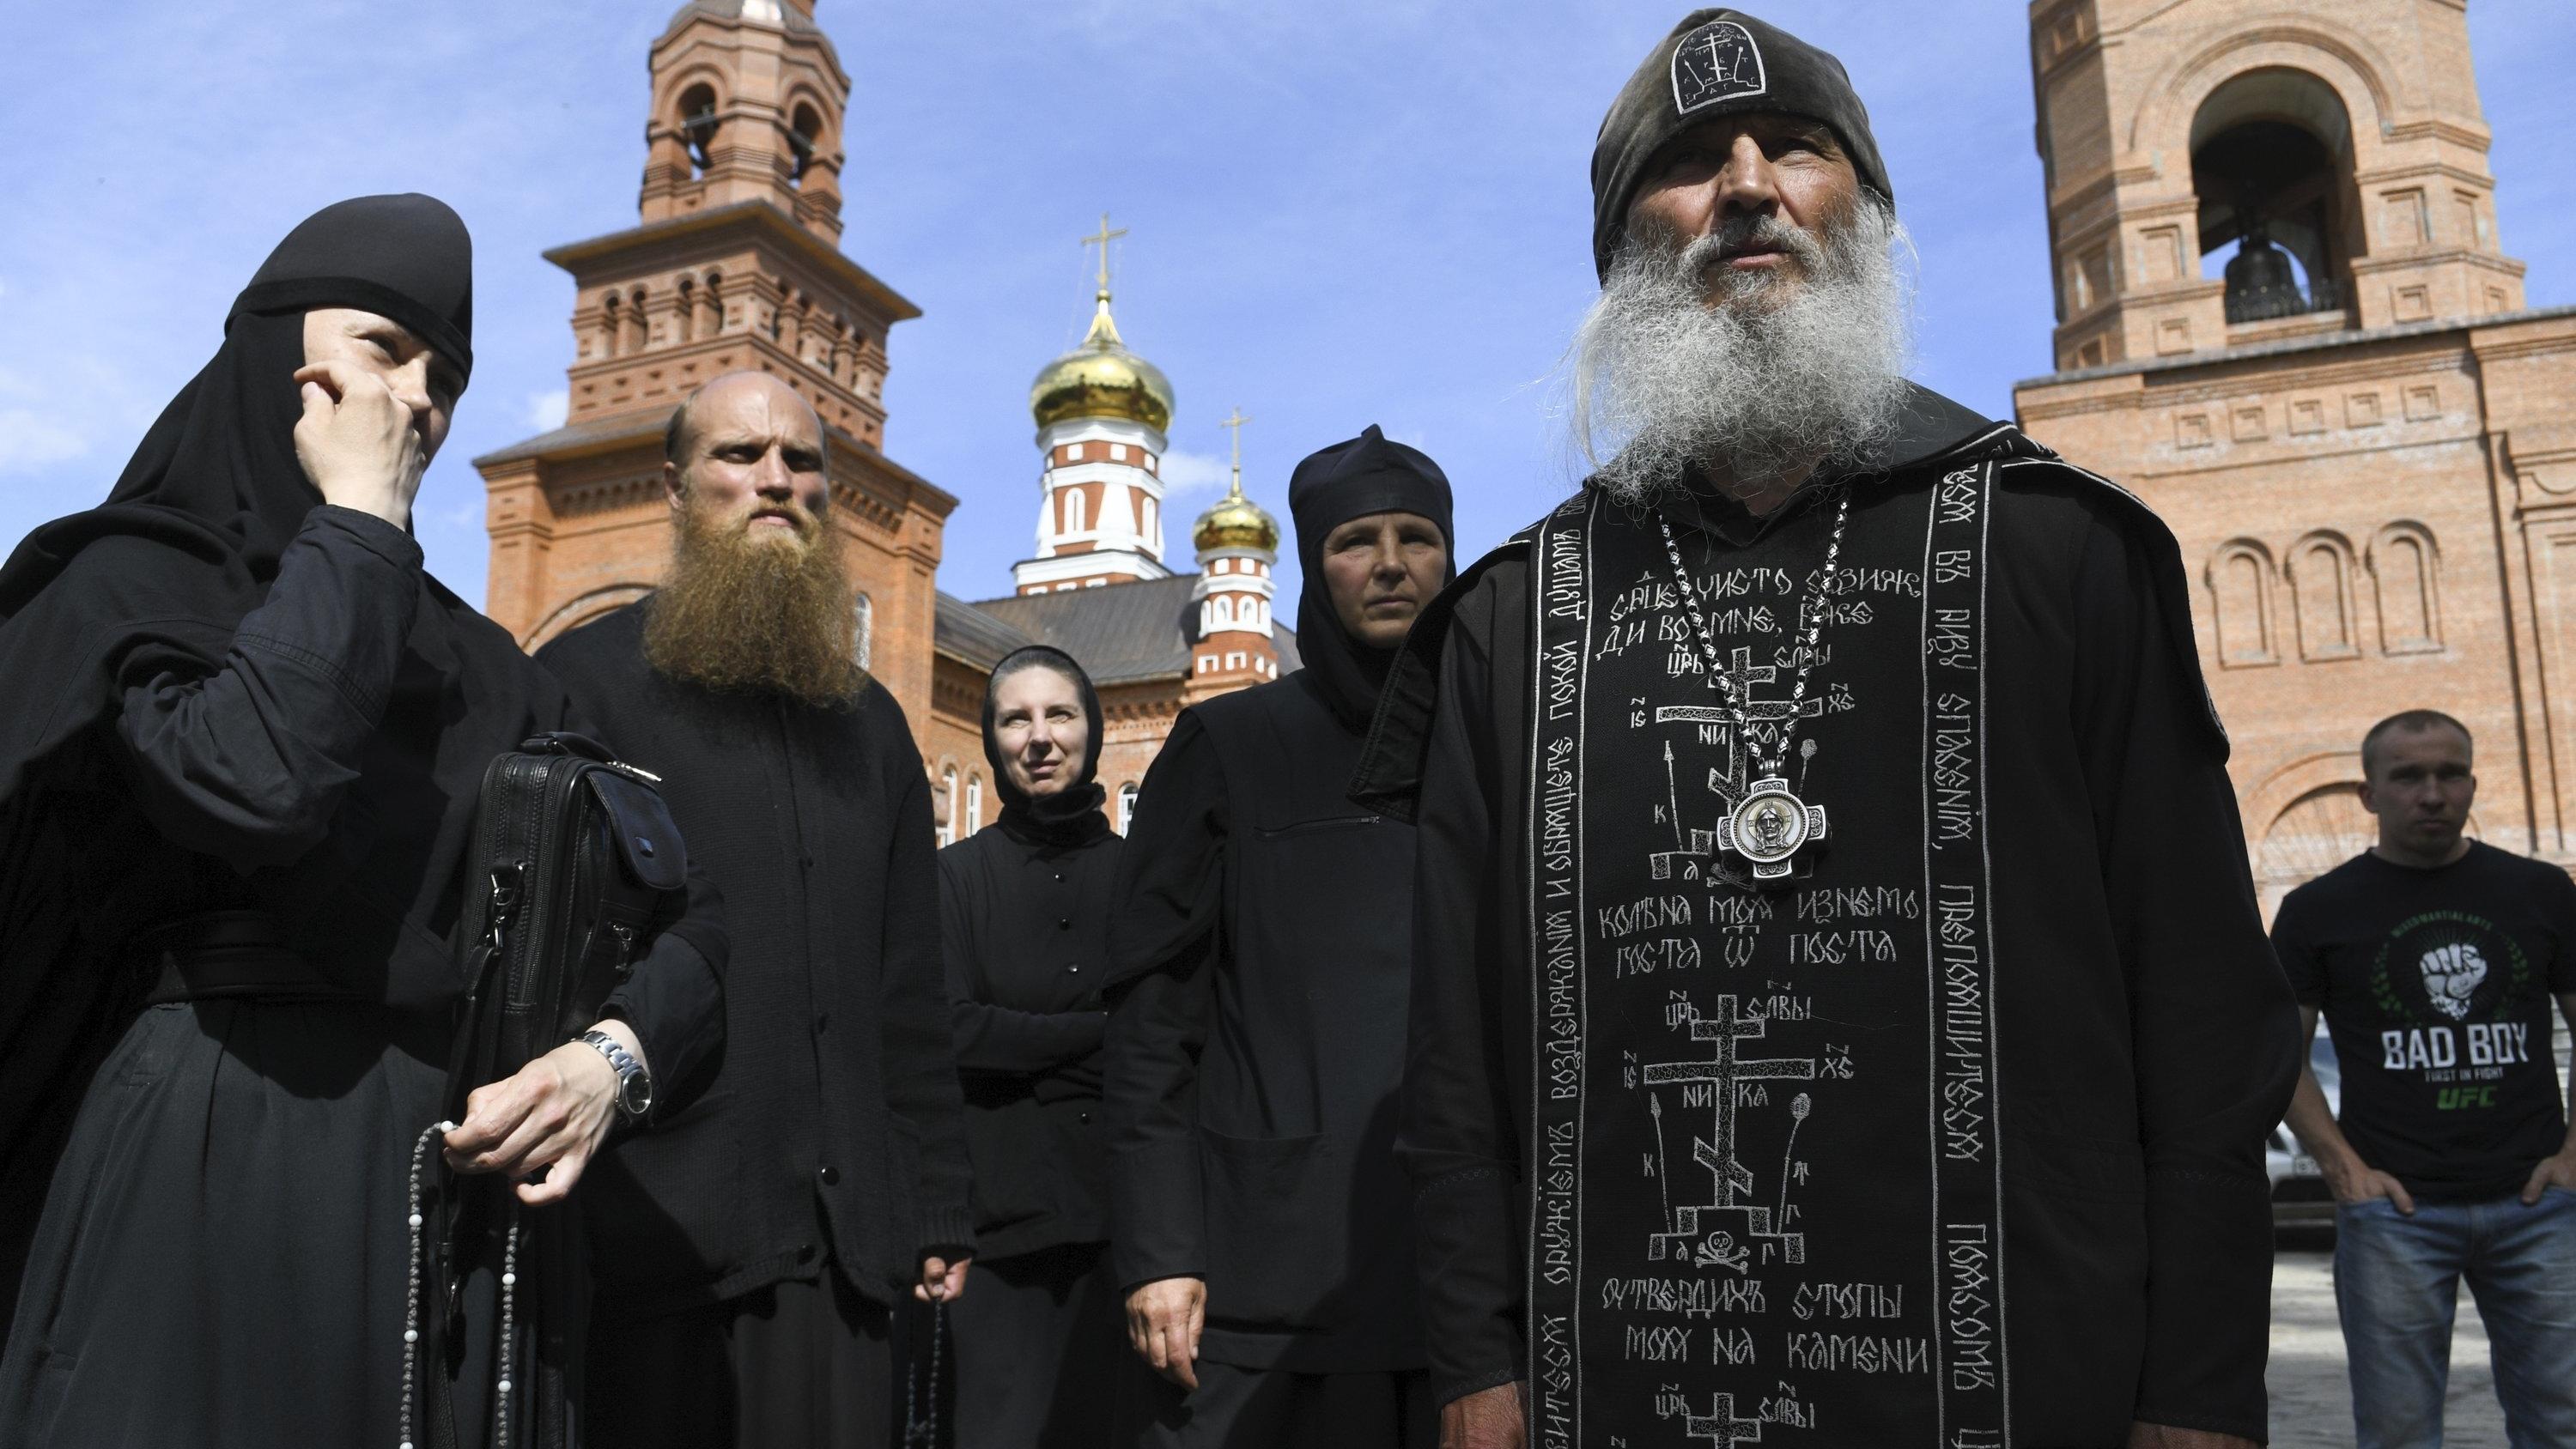 ARCHIV - 17.06.2020, Russland, Sredneuralsk: Vater Sergij (2.v.r), Mönch aus Russland, spricht mit Journalisten. In Russland hat ein ehemaliger Mönch namens Sergij bereits mehrfach für Schlagzeilen gesorgt, nun ist er in einer aufsehenerregenden Akti